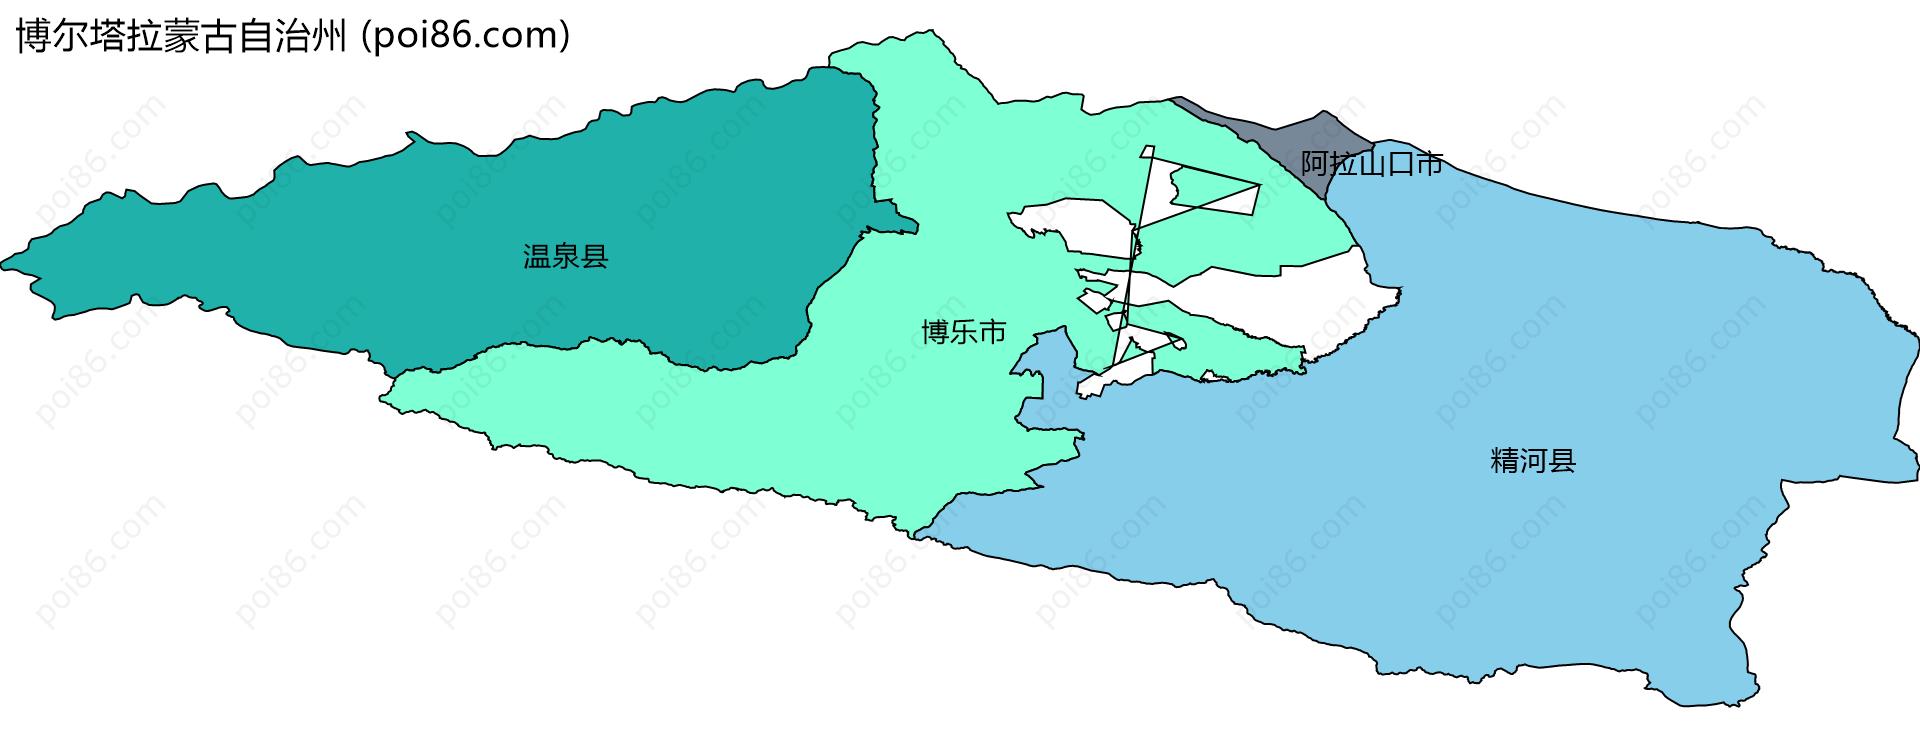 博尔塔拉蒙古自治州边界地图